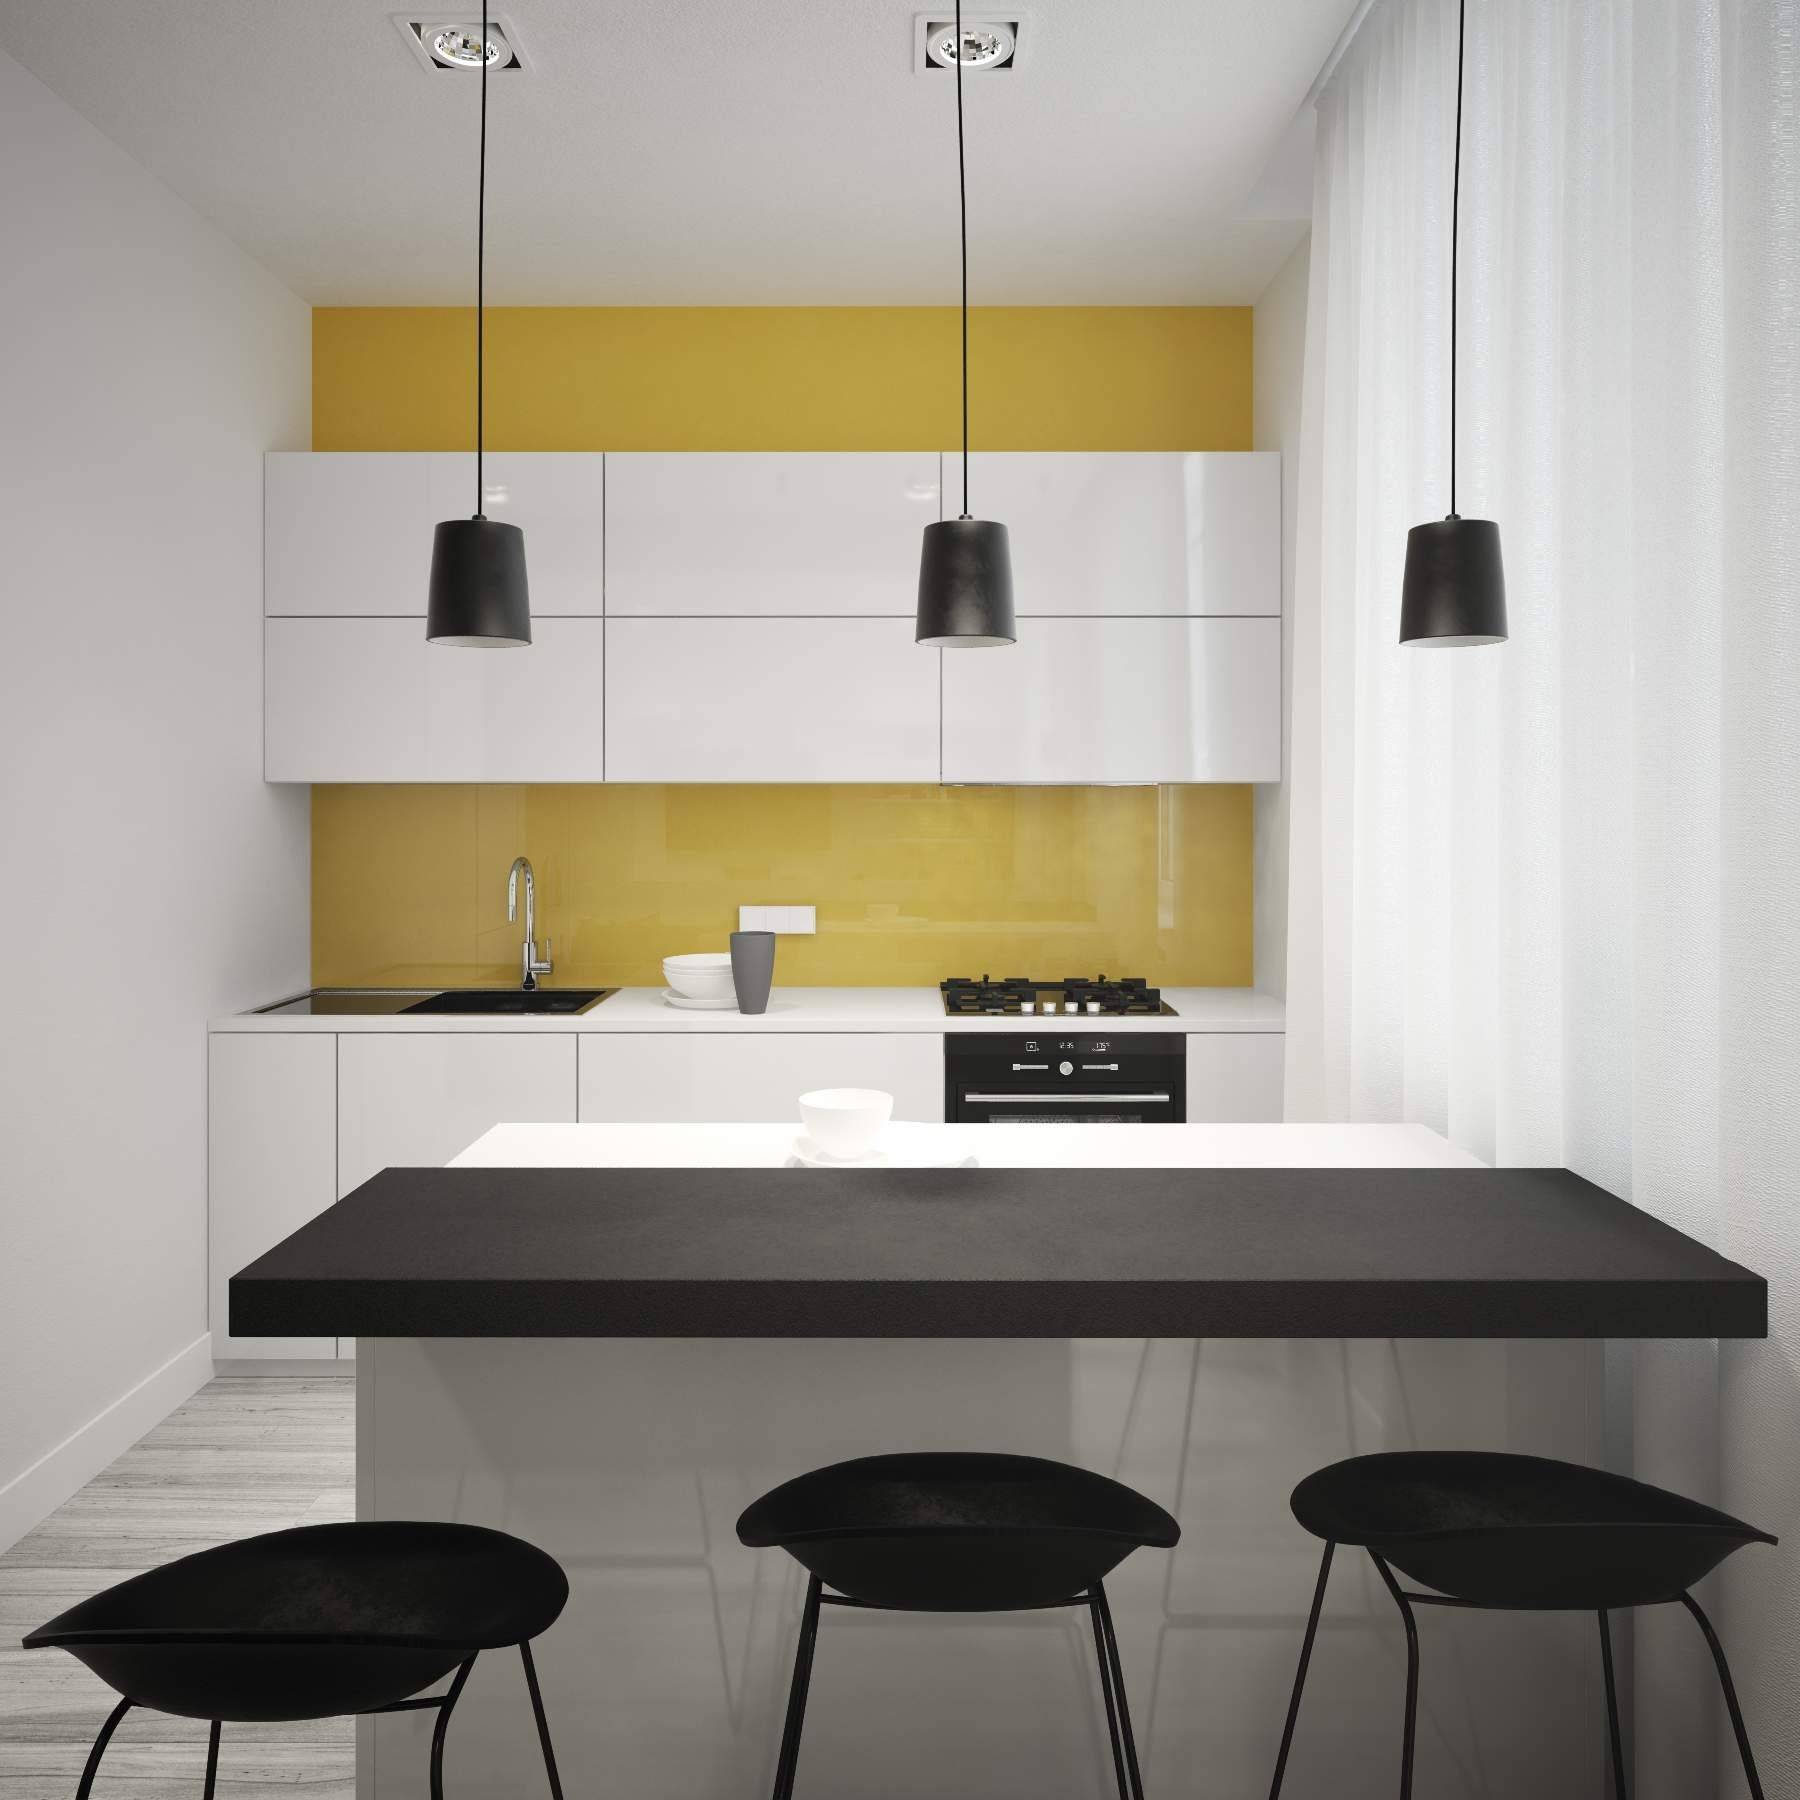 Кухня в стиле минимализм – особо удачный выбор для небольшой площади + 59 фото дизайна